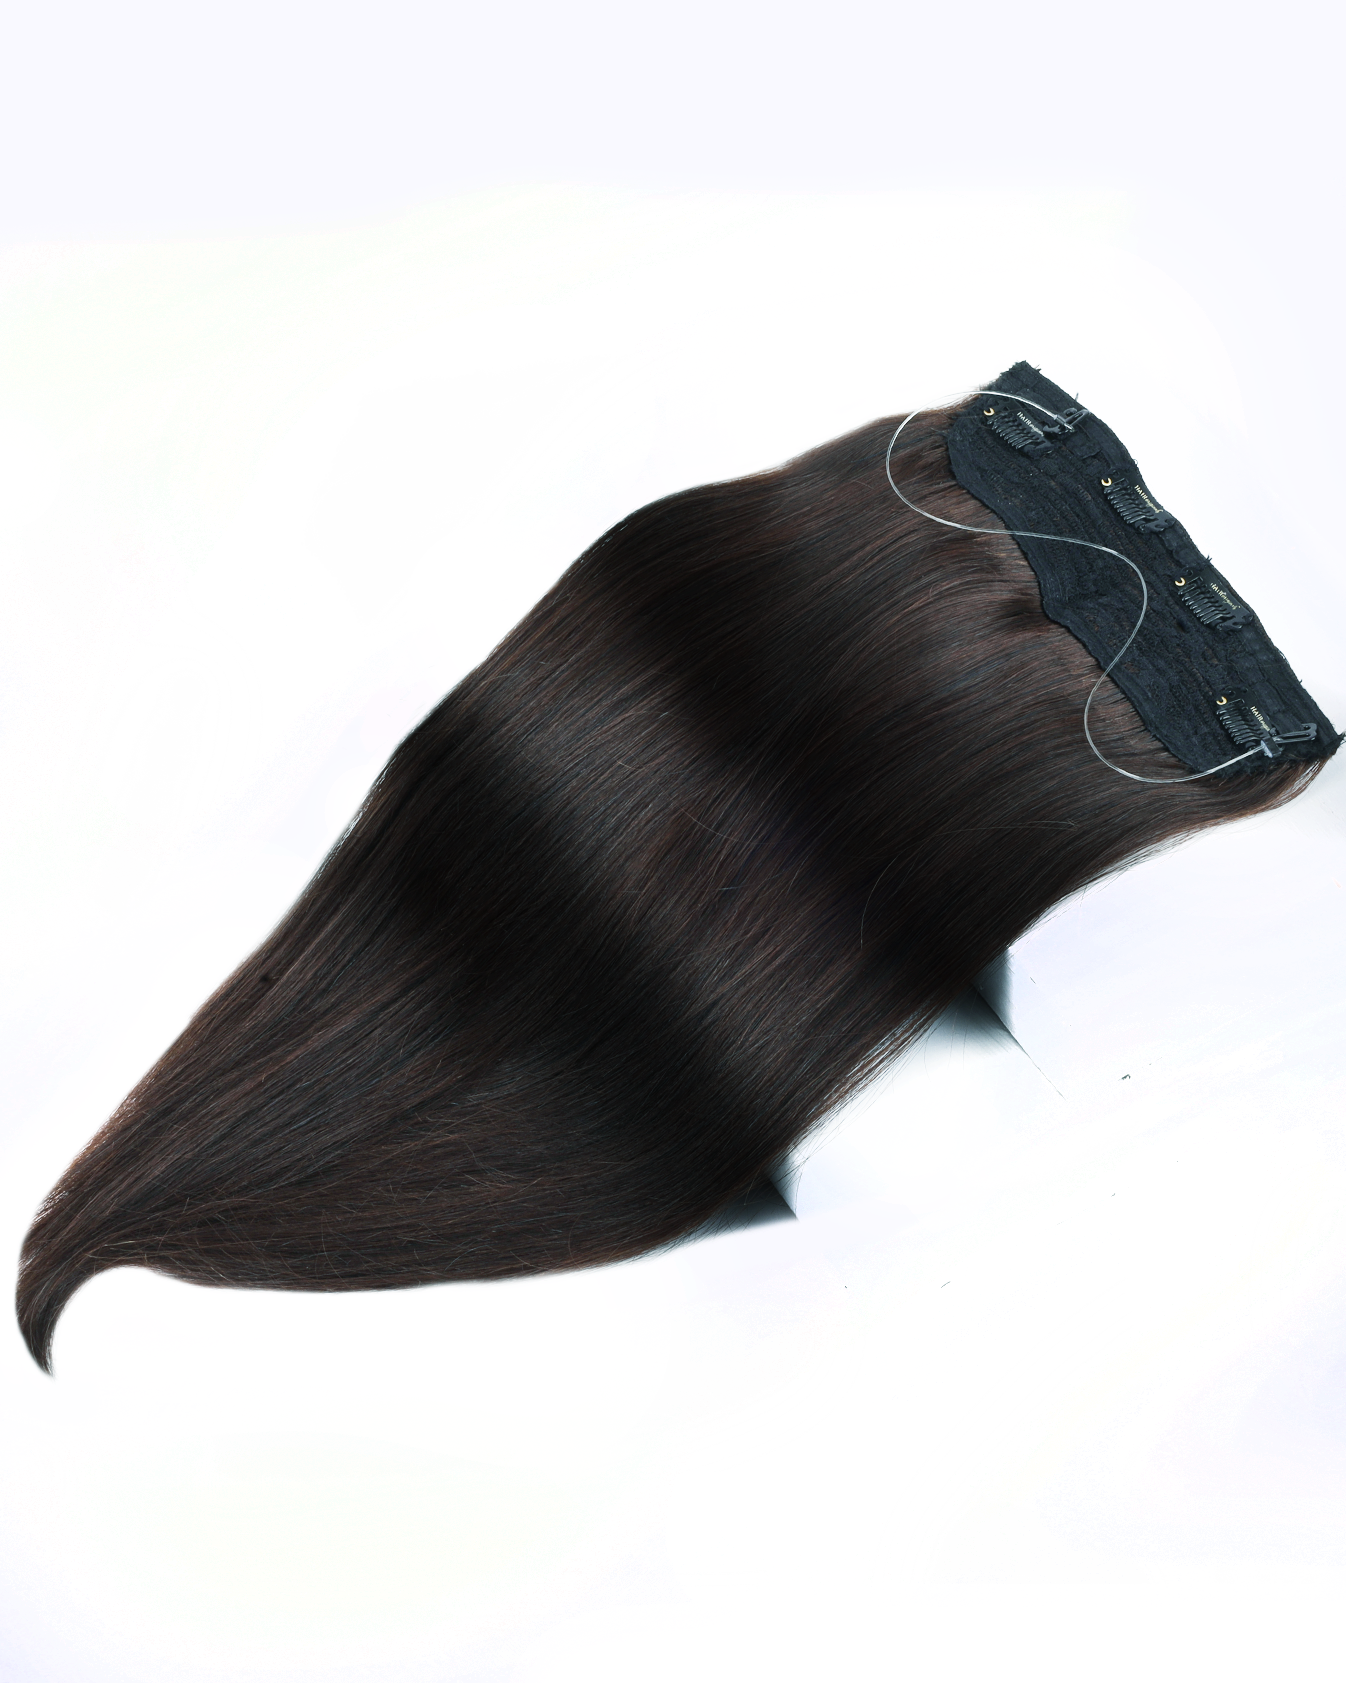 Halo Hair Extensions  HairOriginals Natural Black Wavy 24 Inch